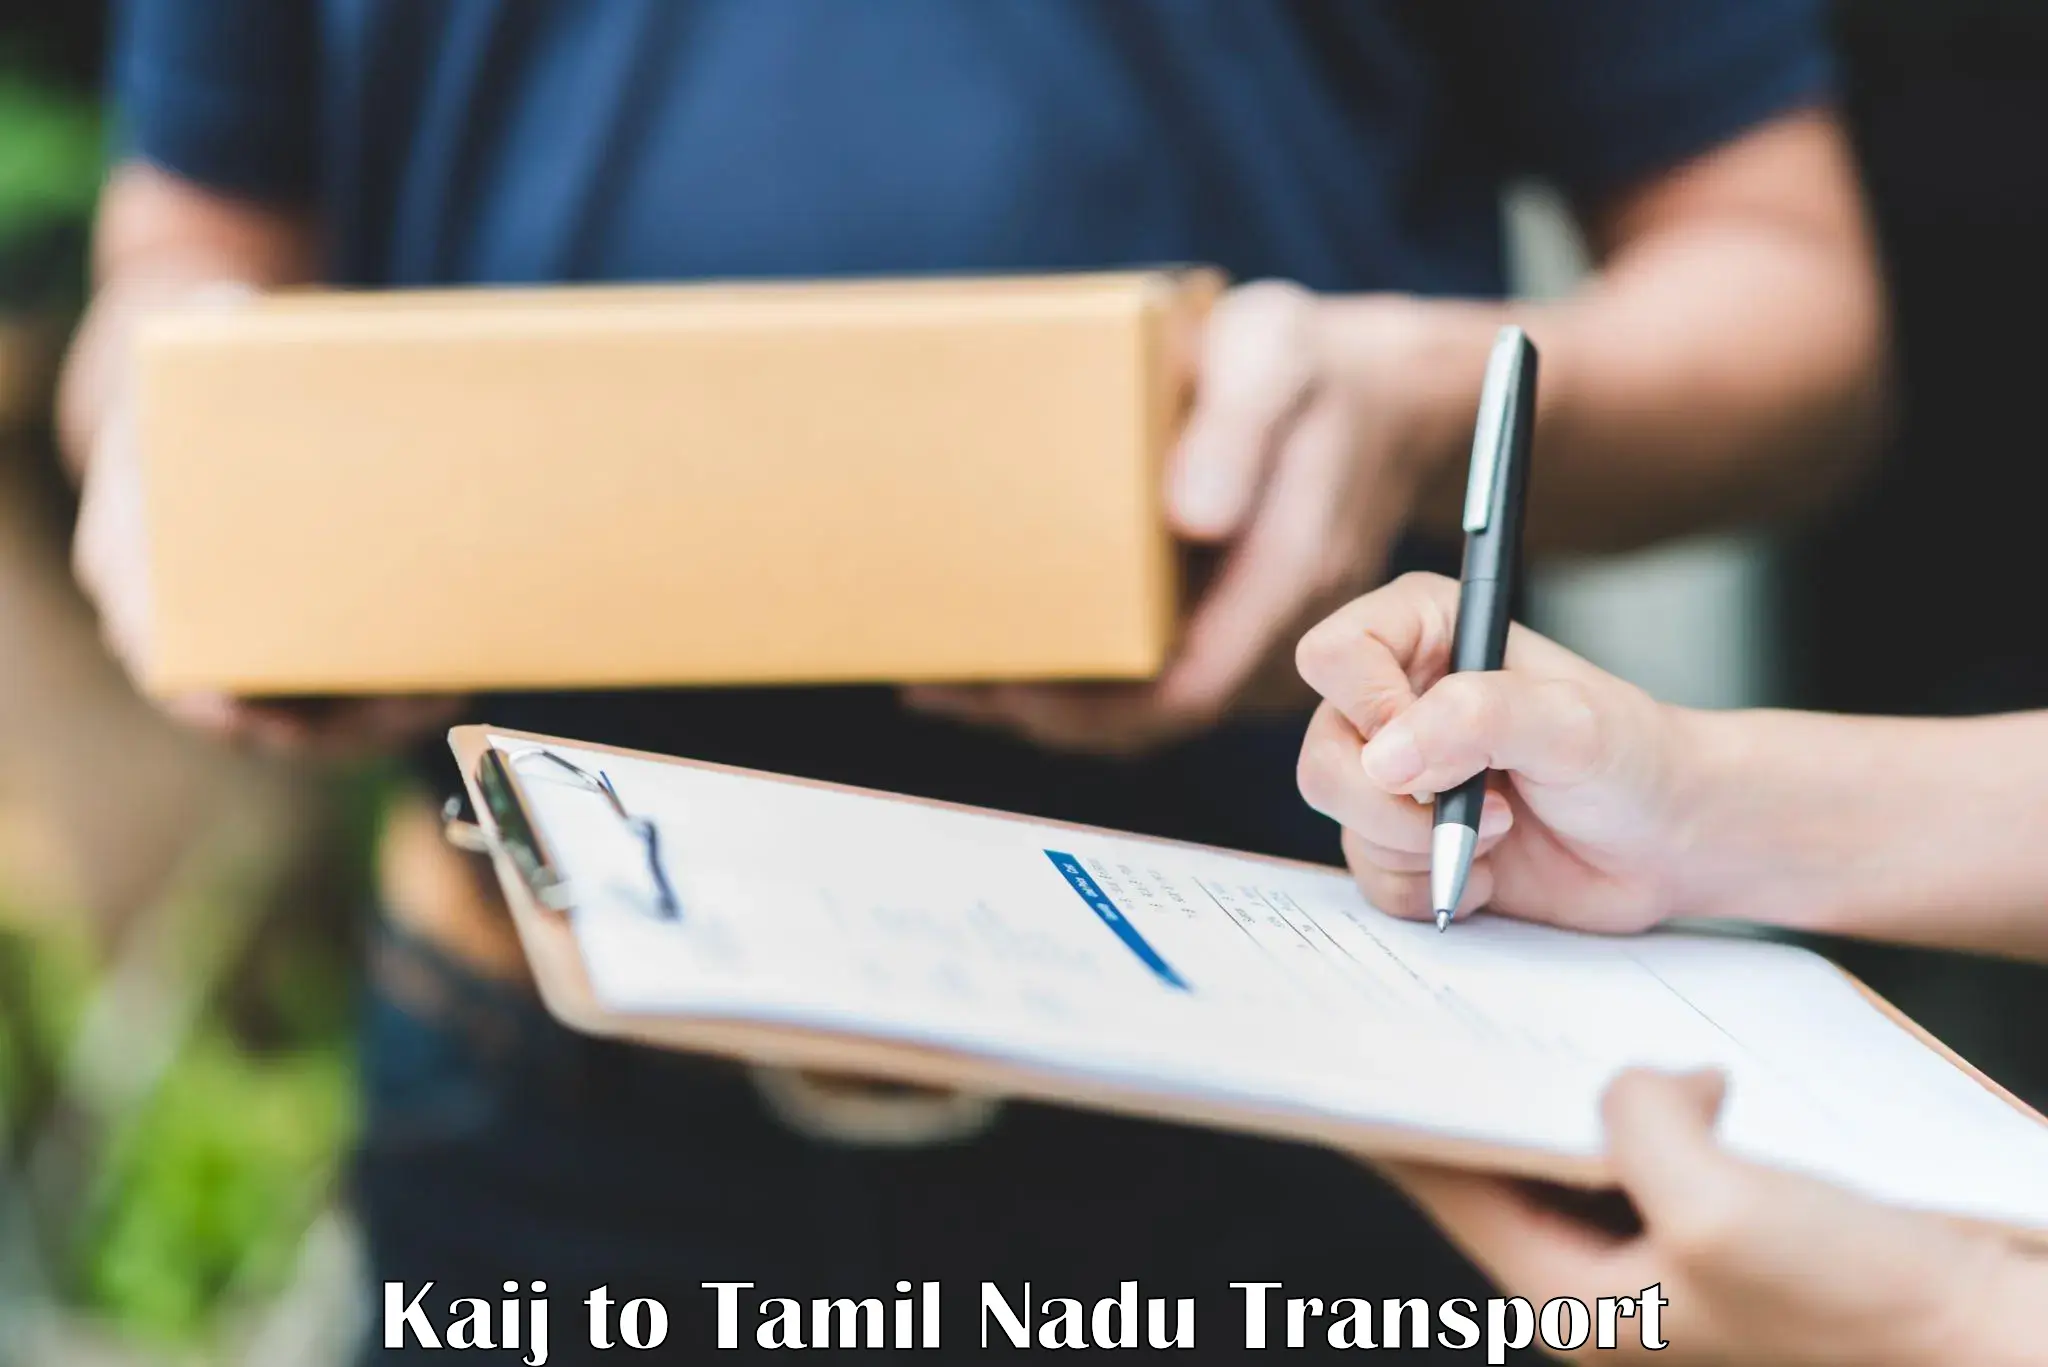 Online transport Kaij to Tiruchengode